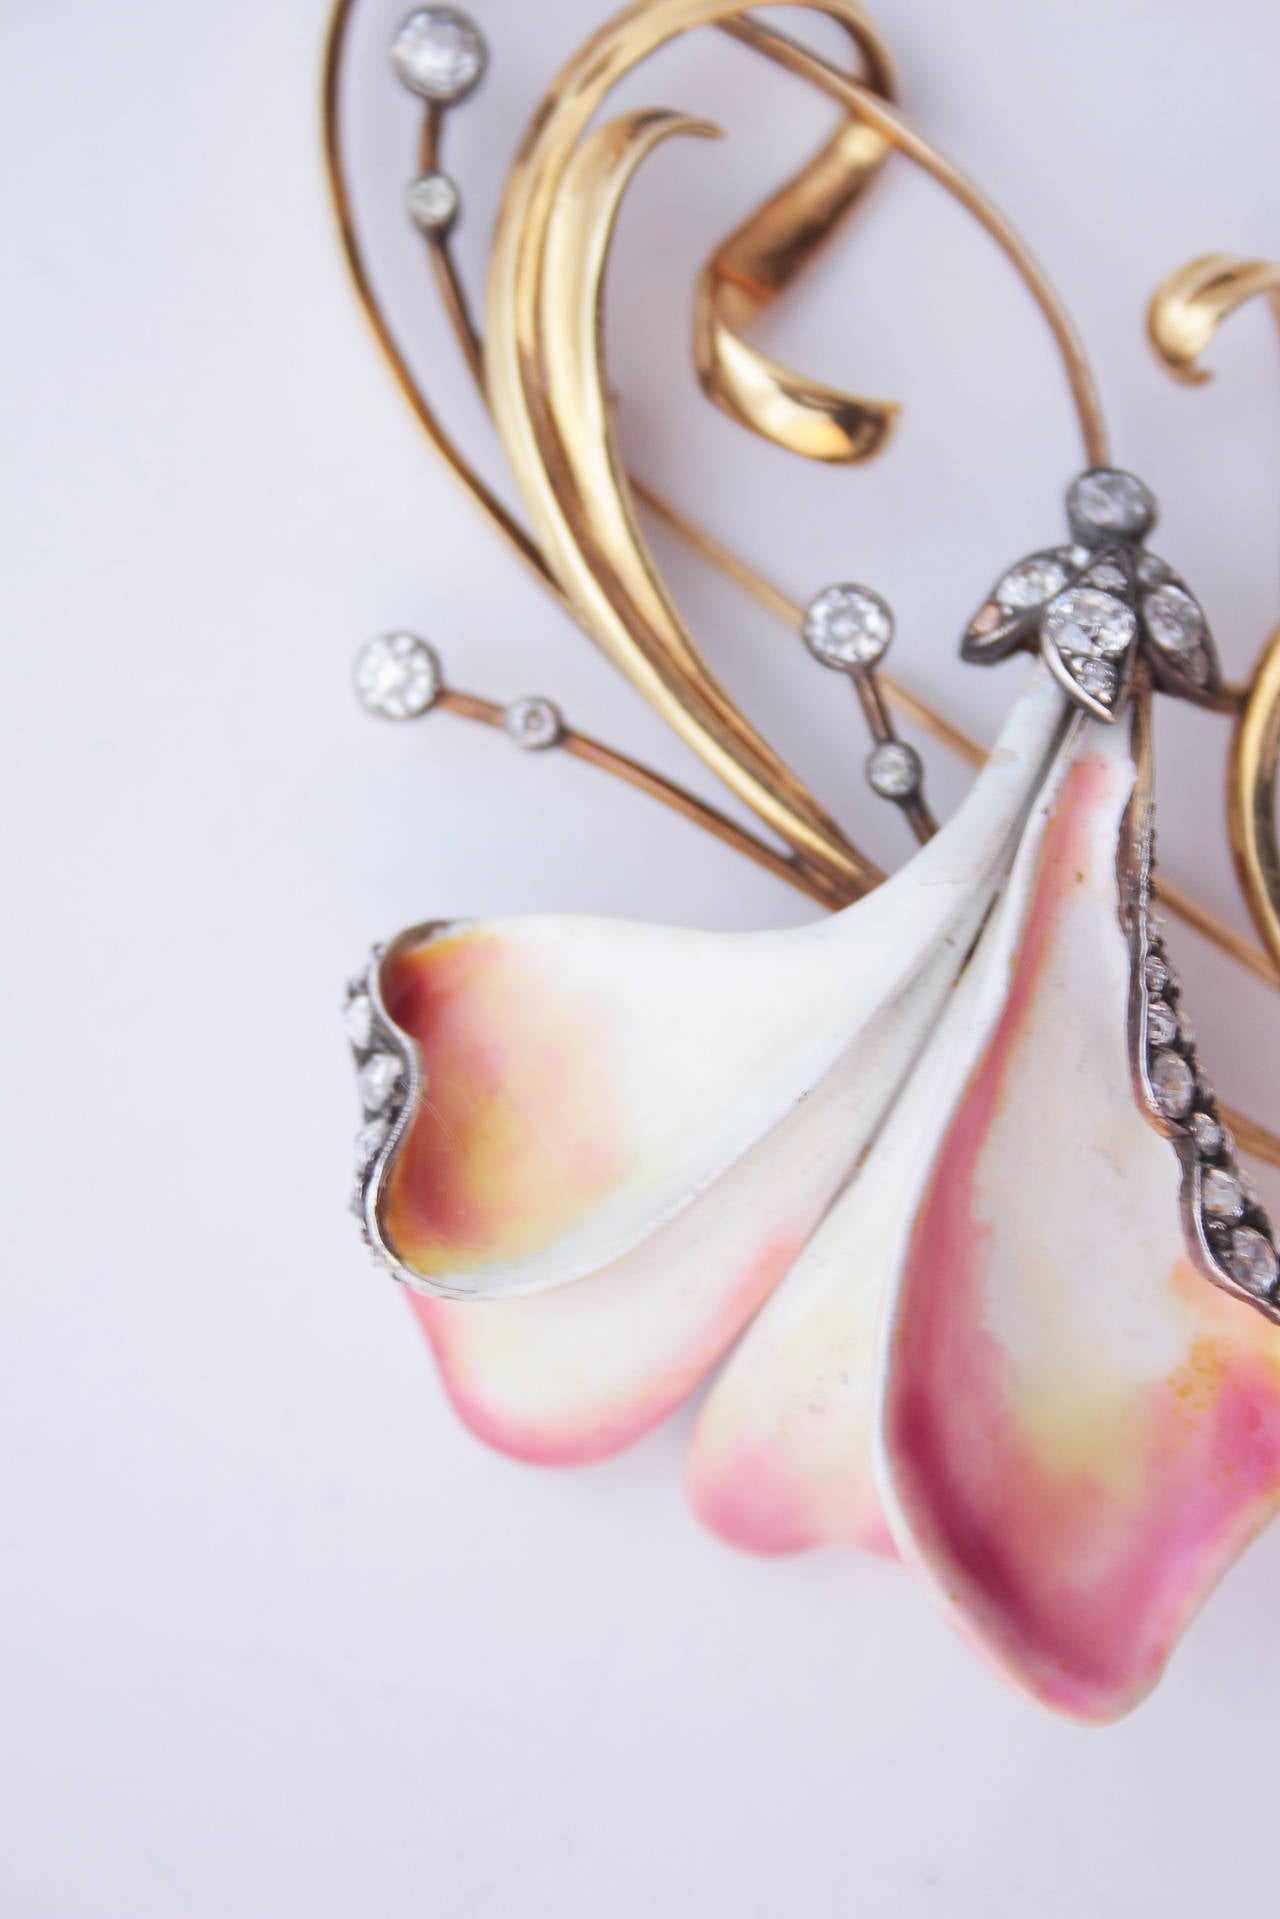 Old European Cut Tiffany & Co. Enamel Diamond Gold Art Nouveau Brooch For Sale